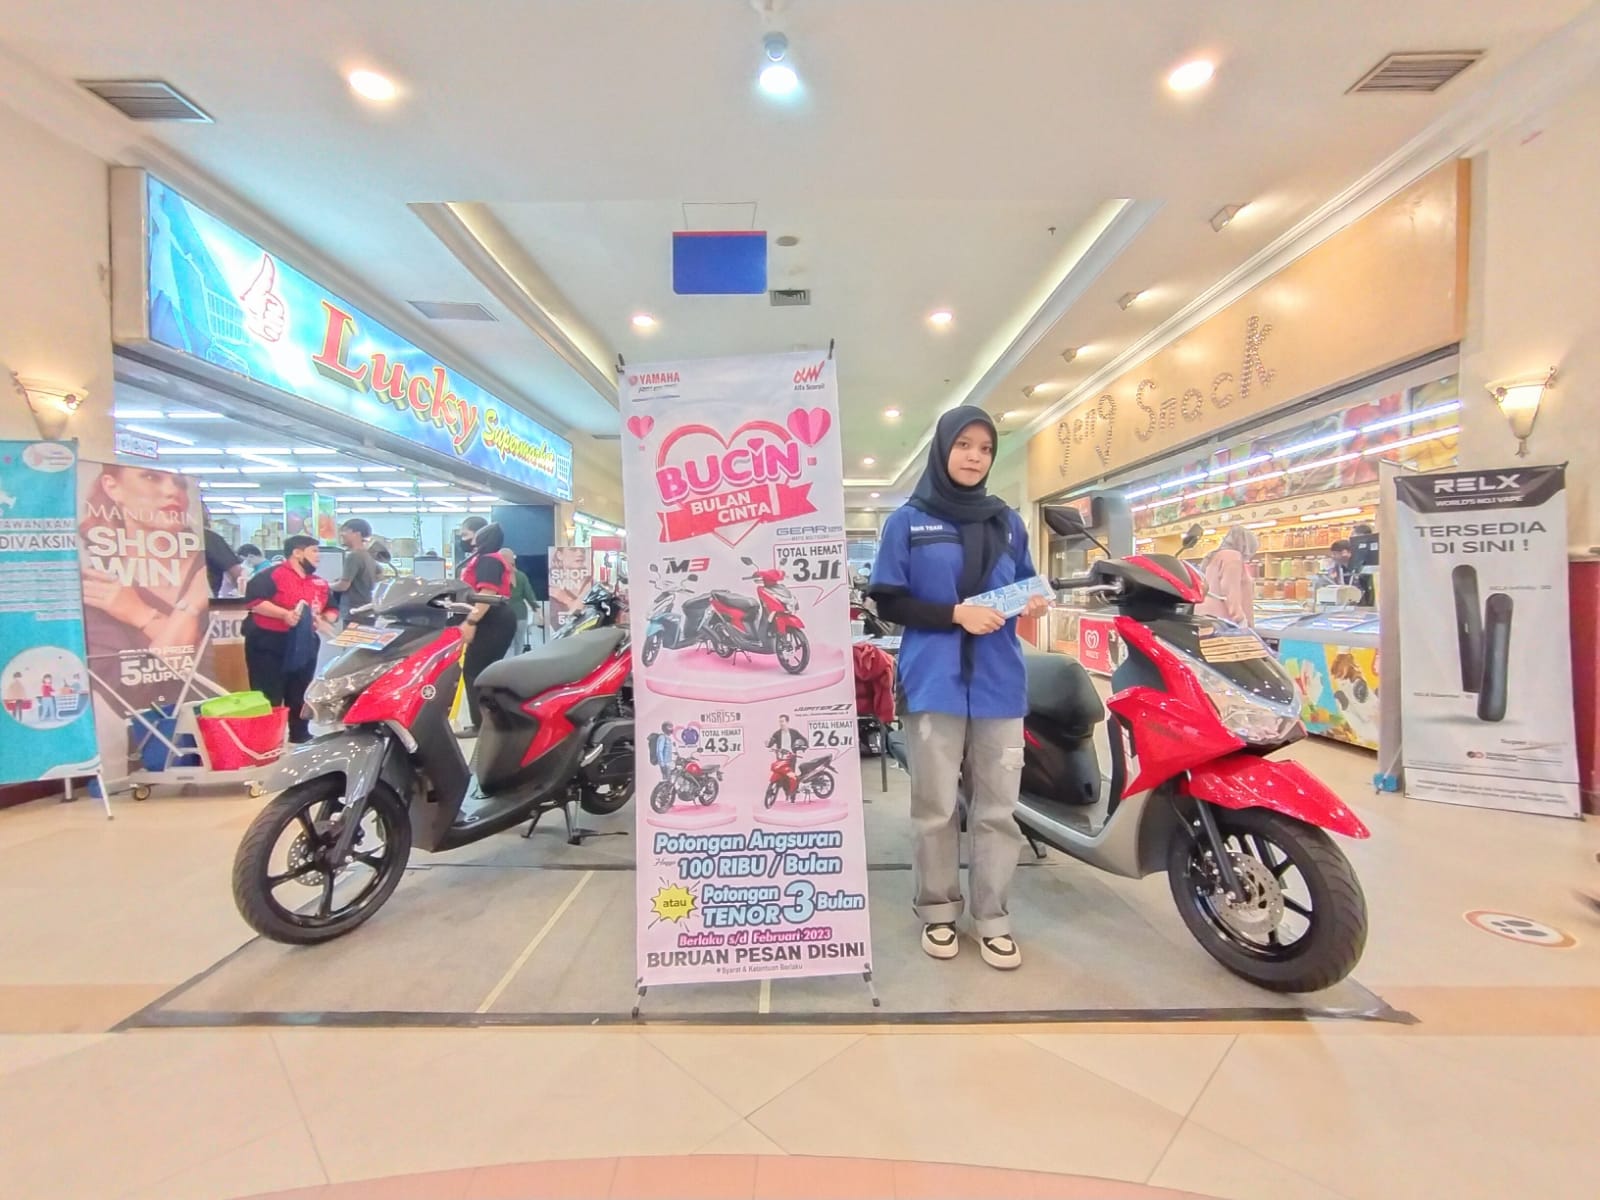 Yamaha Hadirkan Promo 'Bulan Penuh Cinta' di Mall Pekanbaru